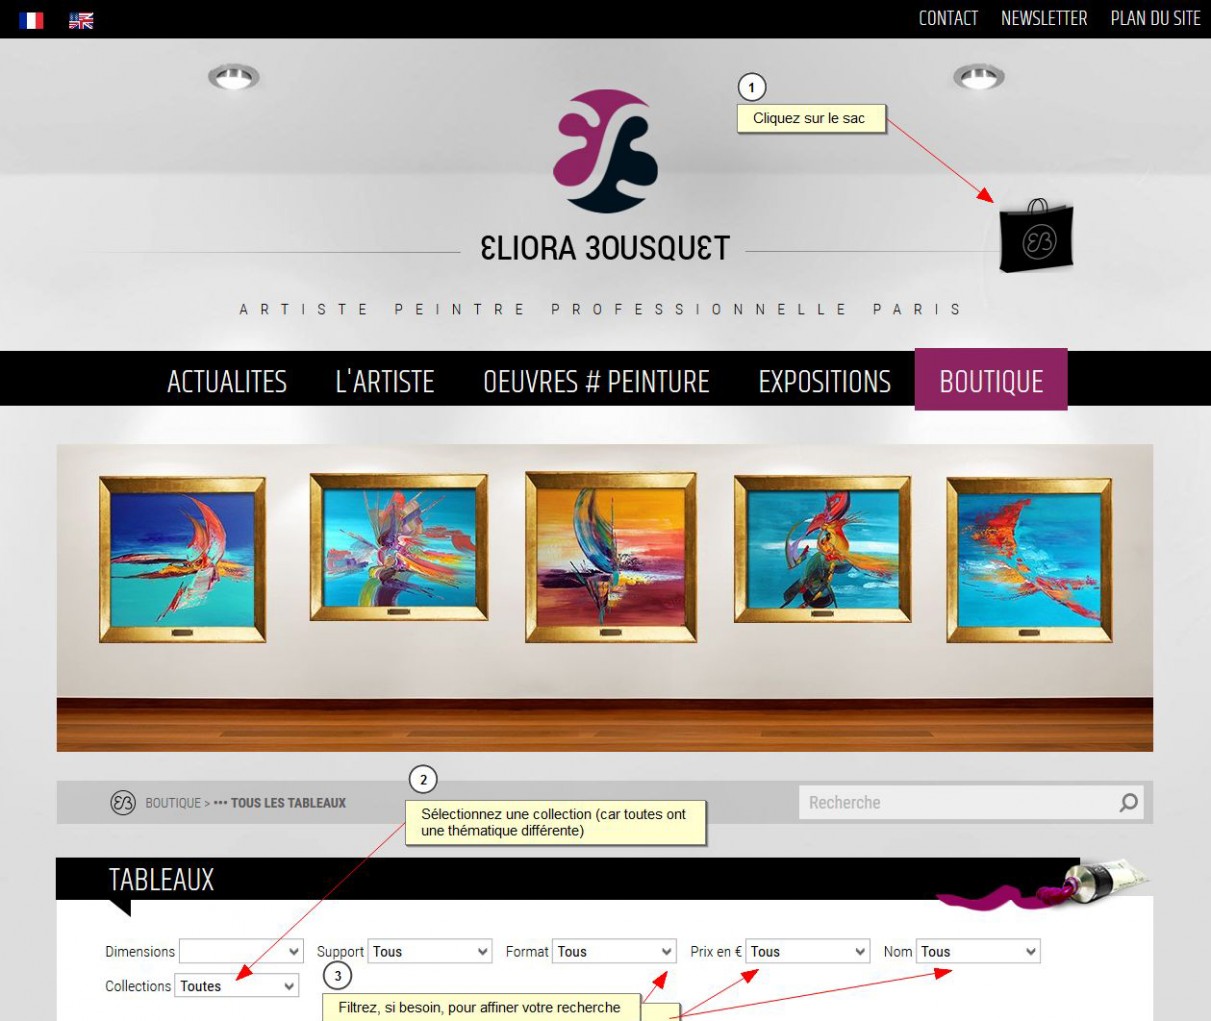 Visuel expliquant comment voir toutes les peintures d'Eliora Bousquet et filtrer les collections